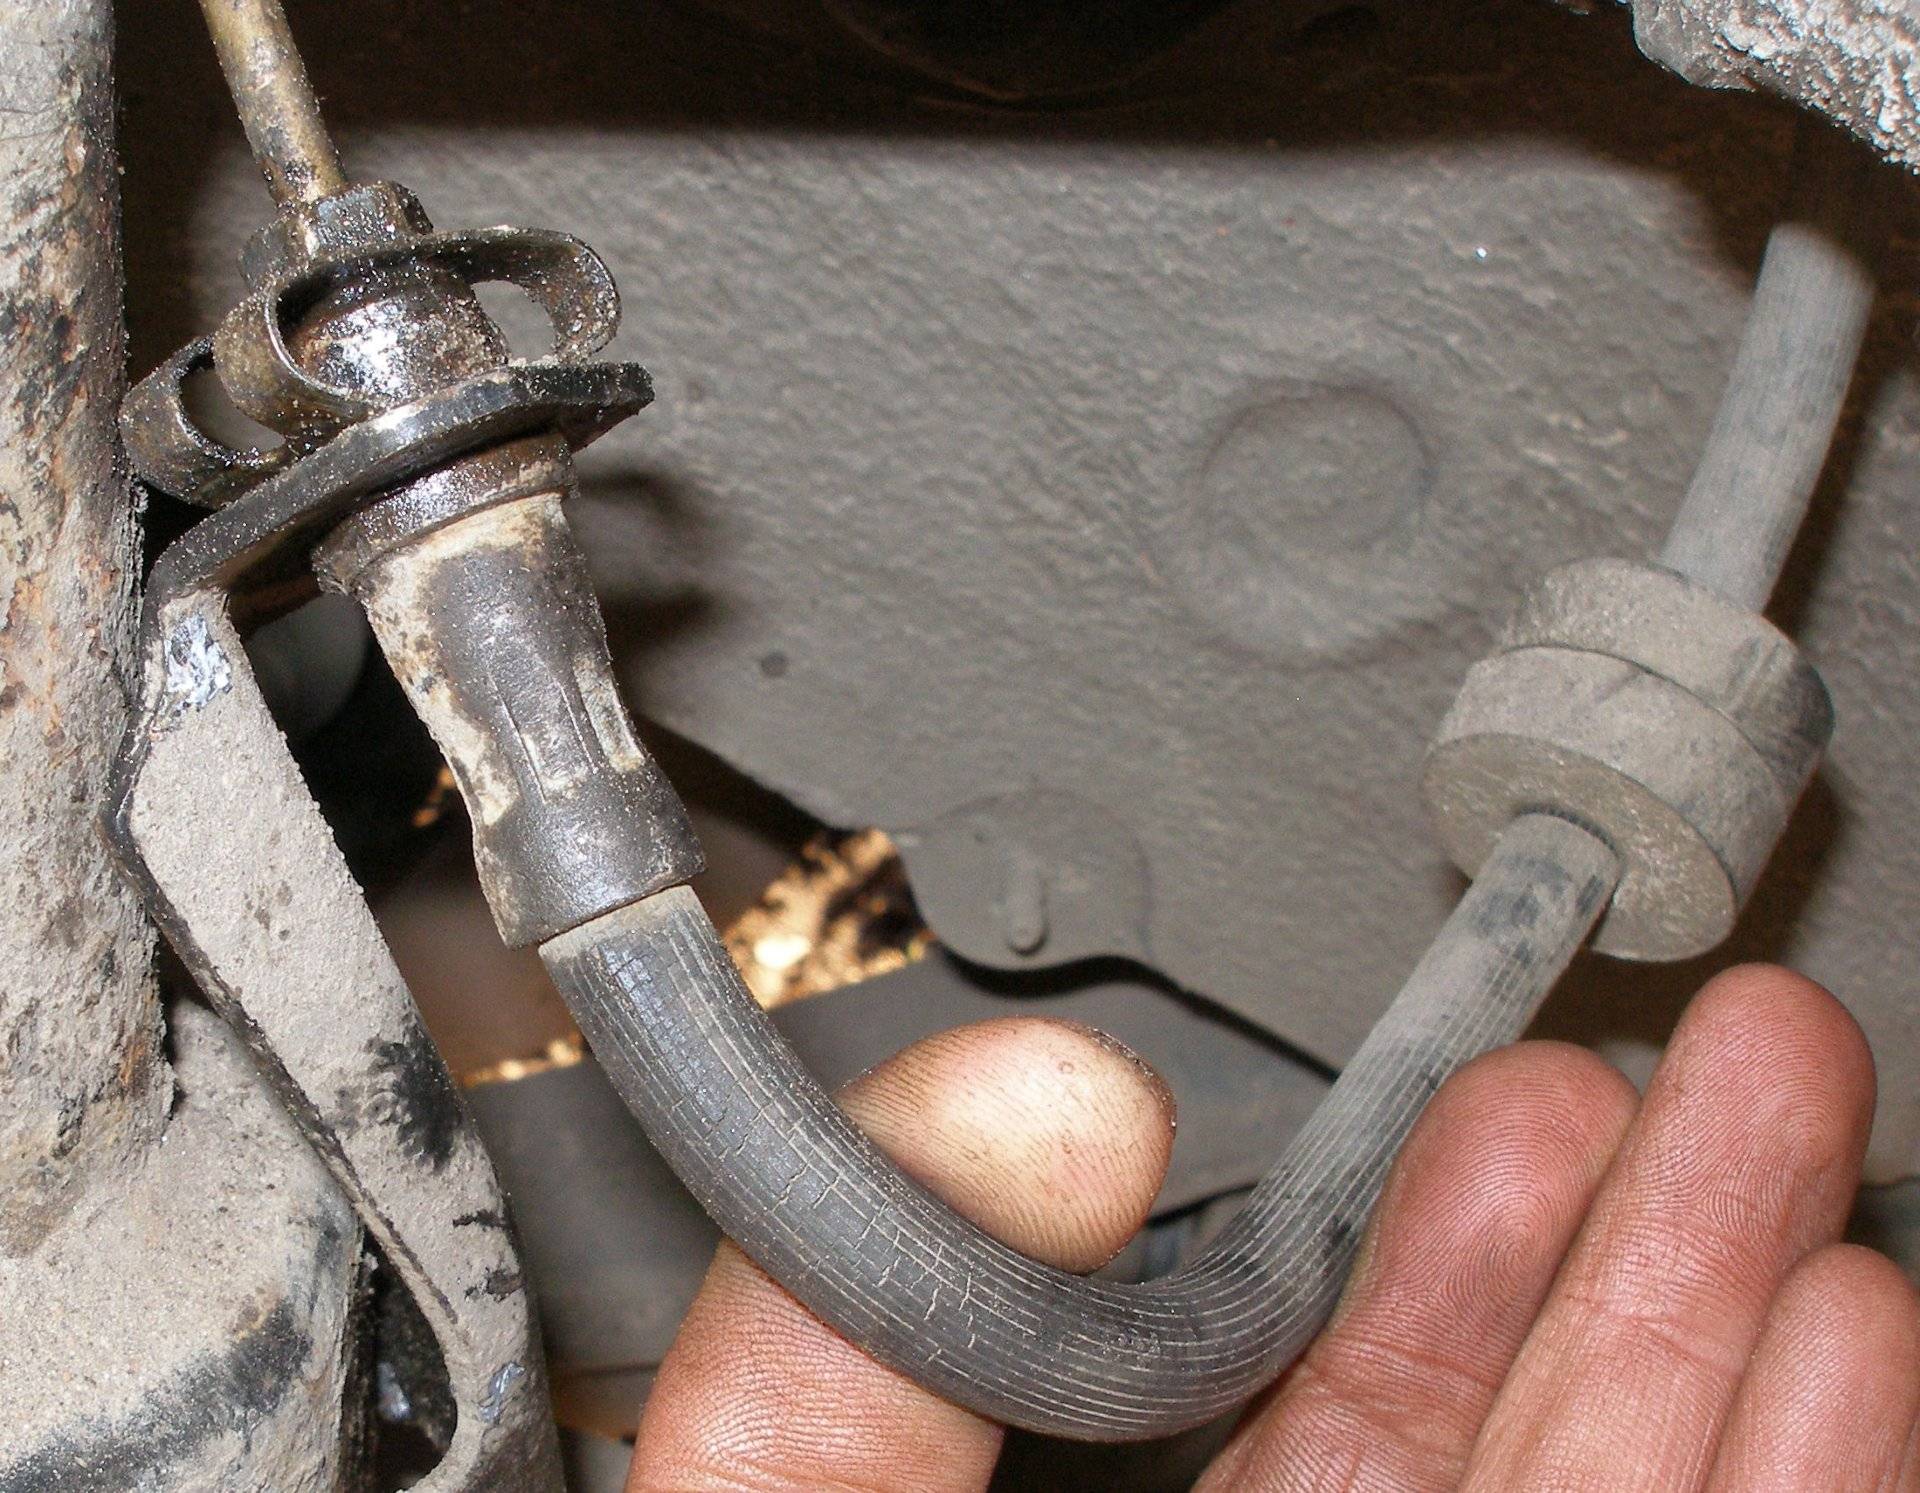 Тормозная система автомобиля — ремонт или замена